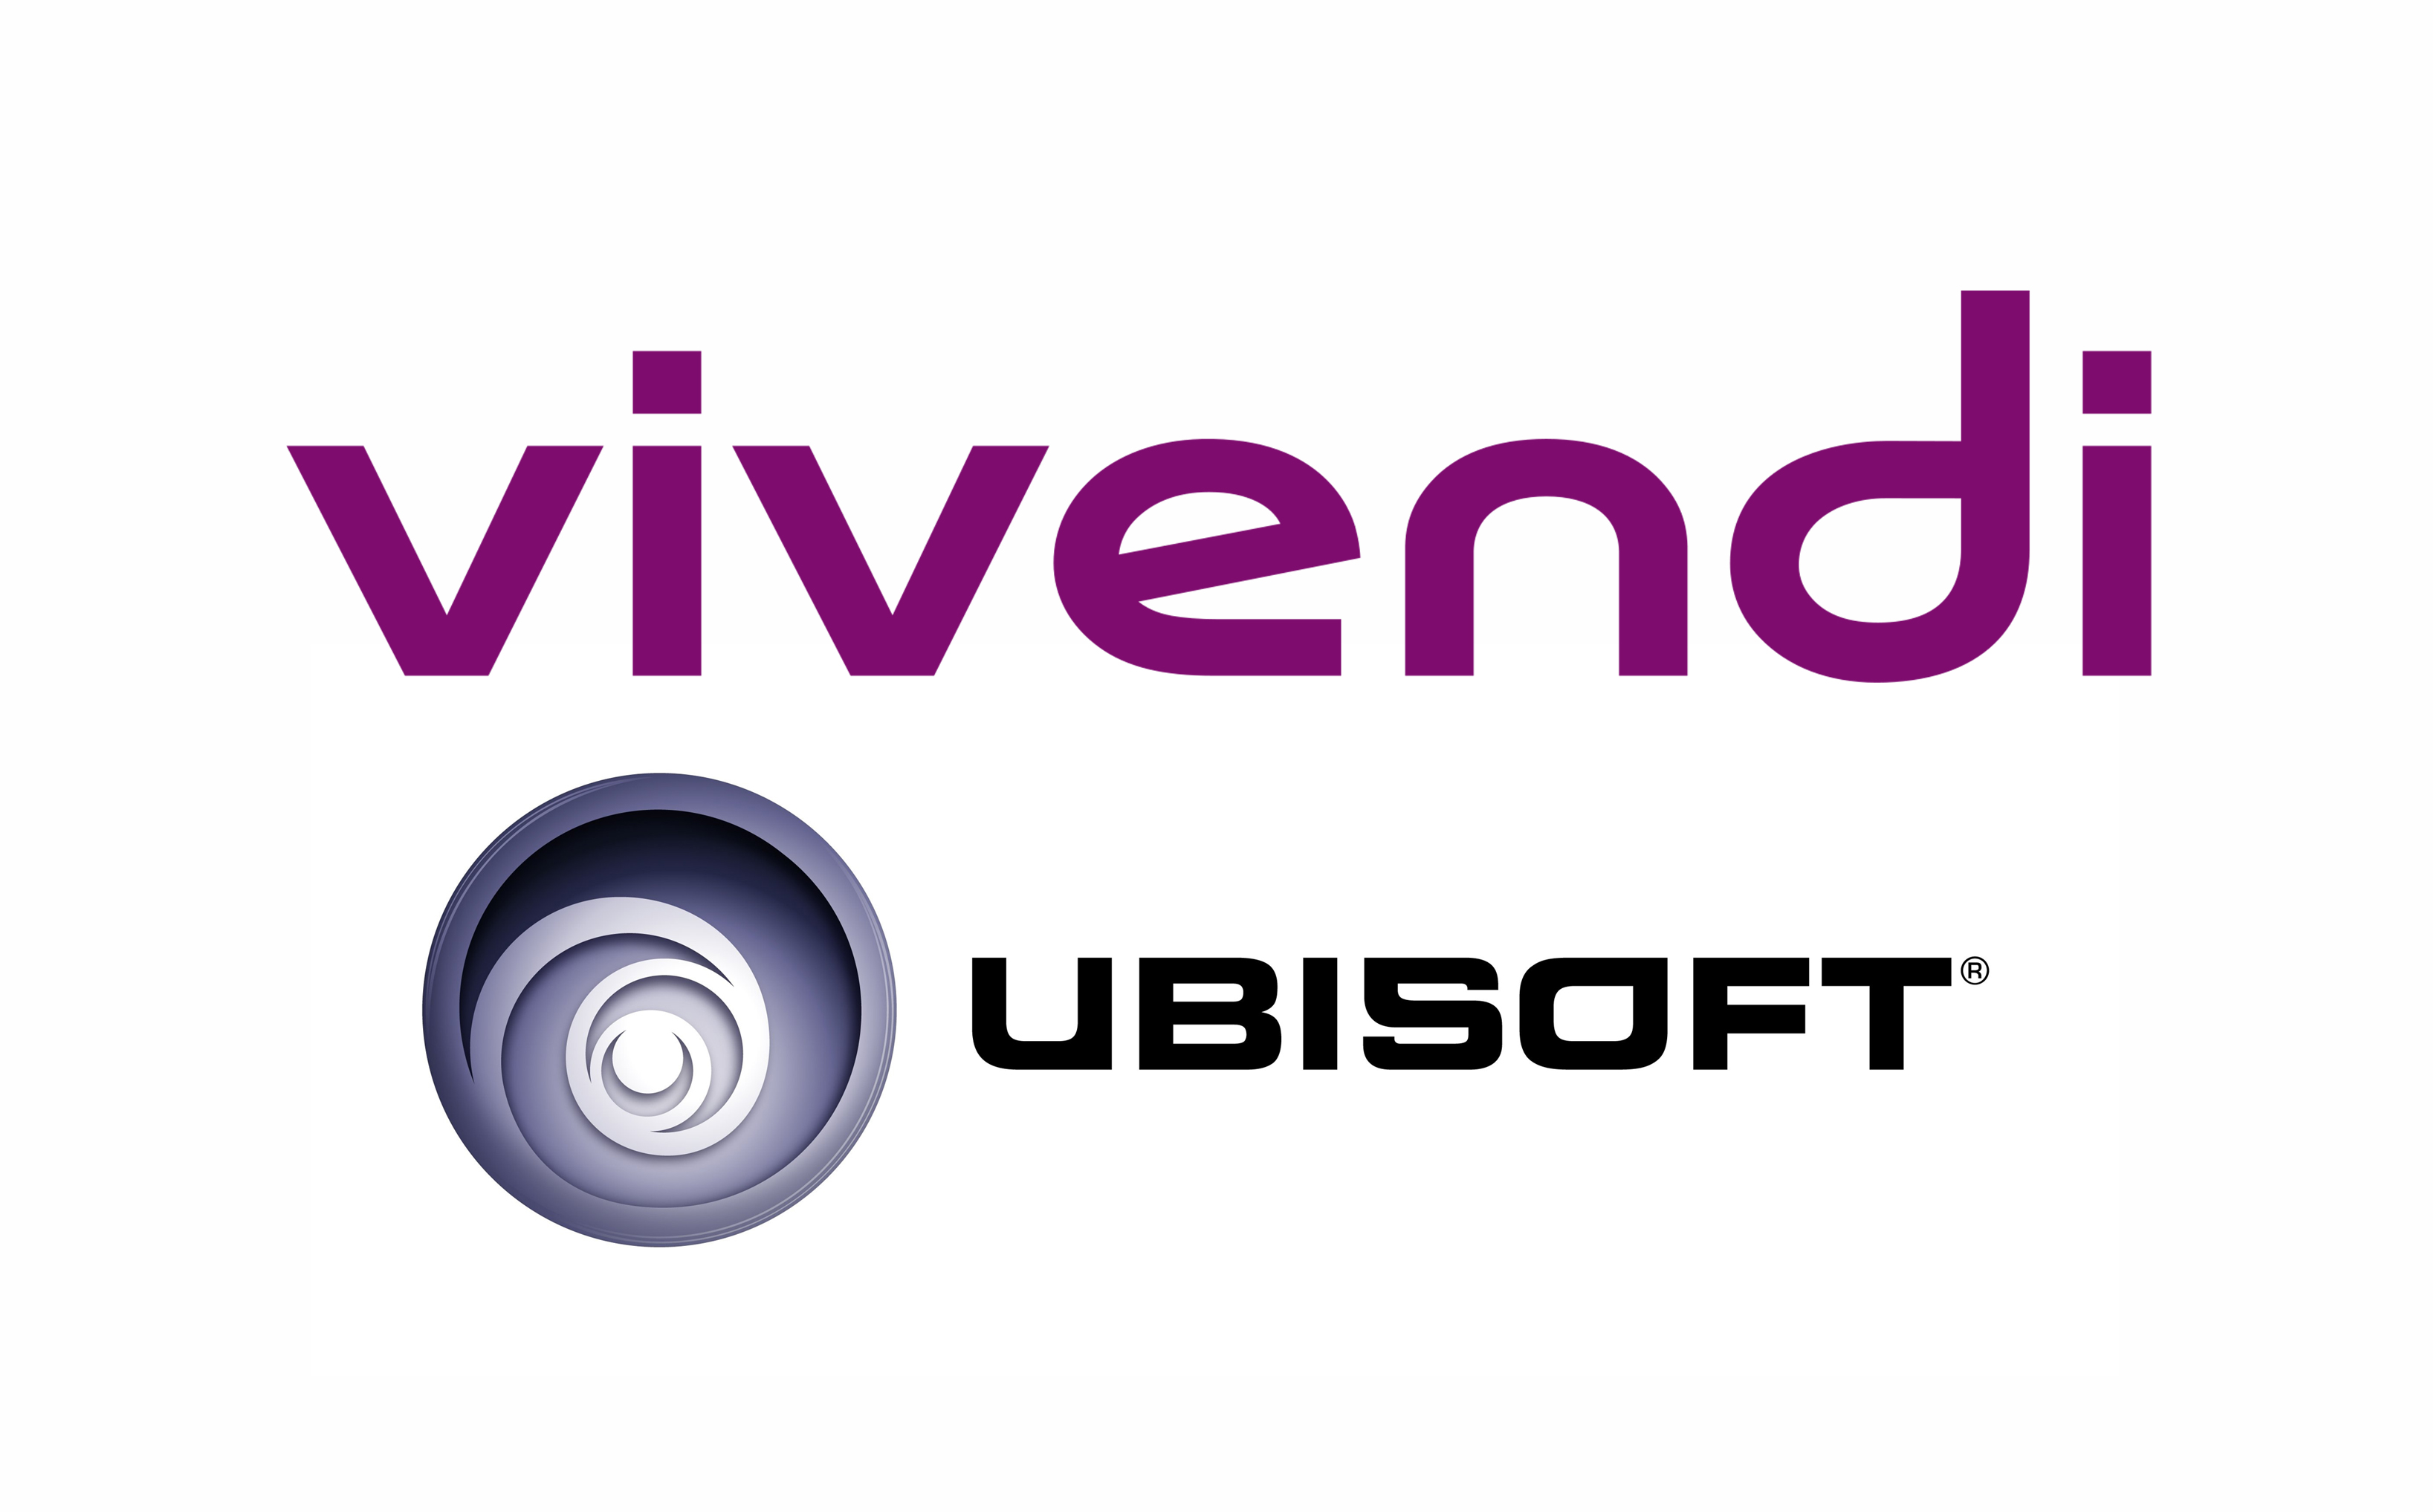 Affaire Ubisoft / Vivendi – proche de l’acquisition par Vivendi ?